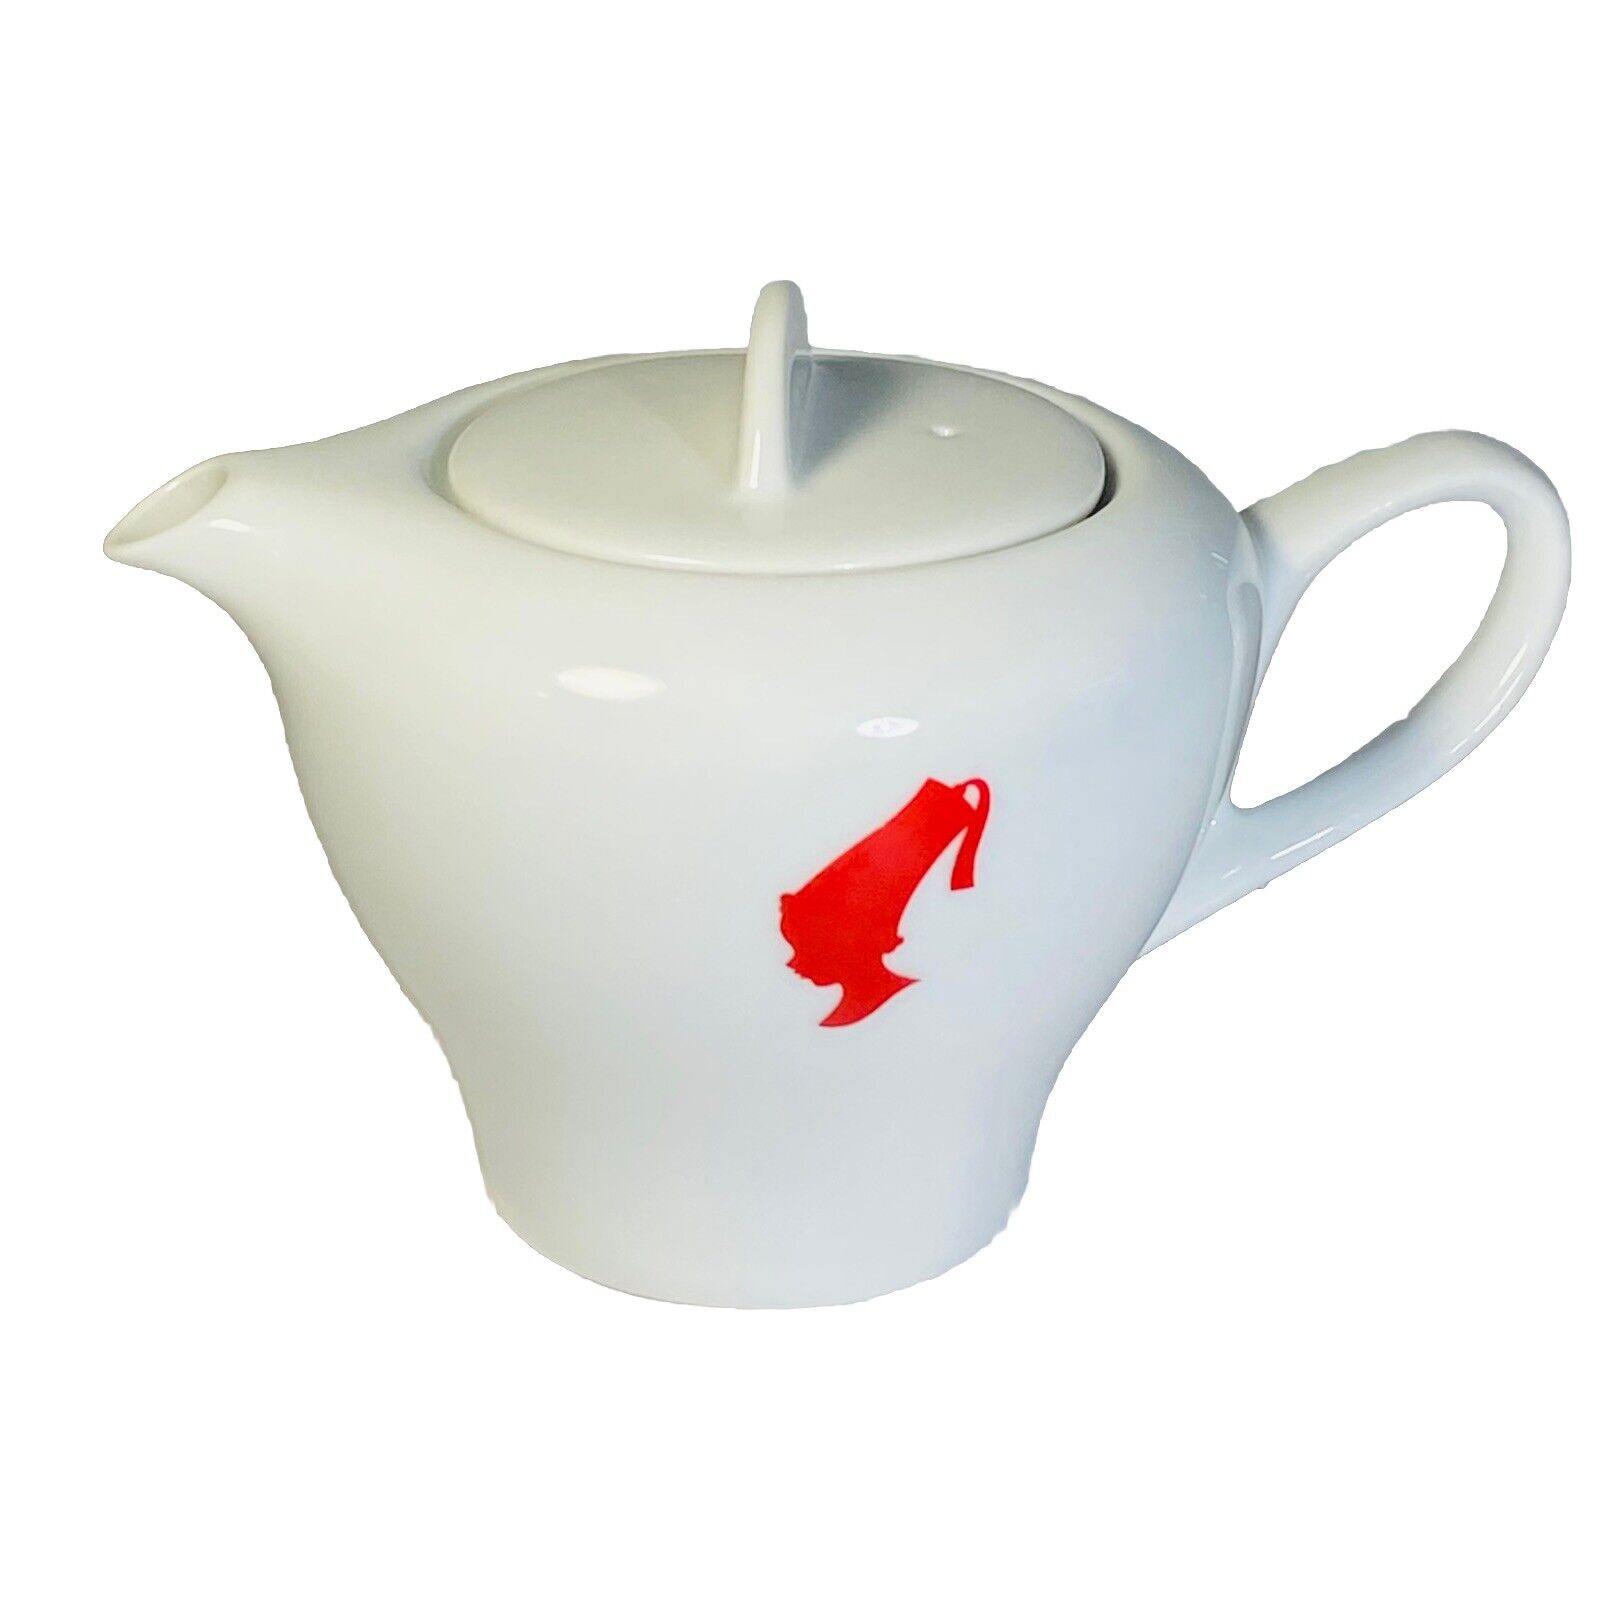 Rare Julius Meinl post modern designer teapot for NEW NWOT